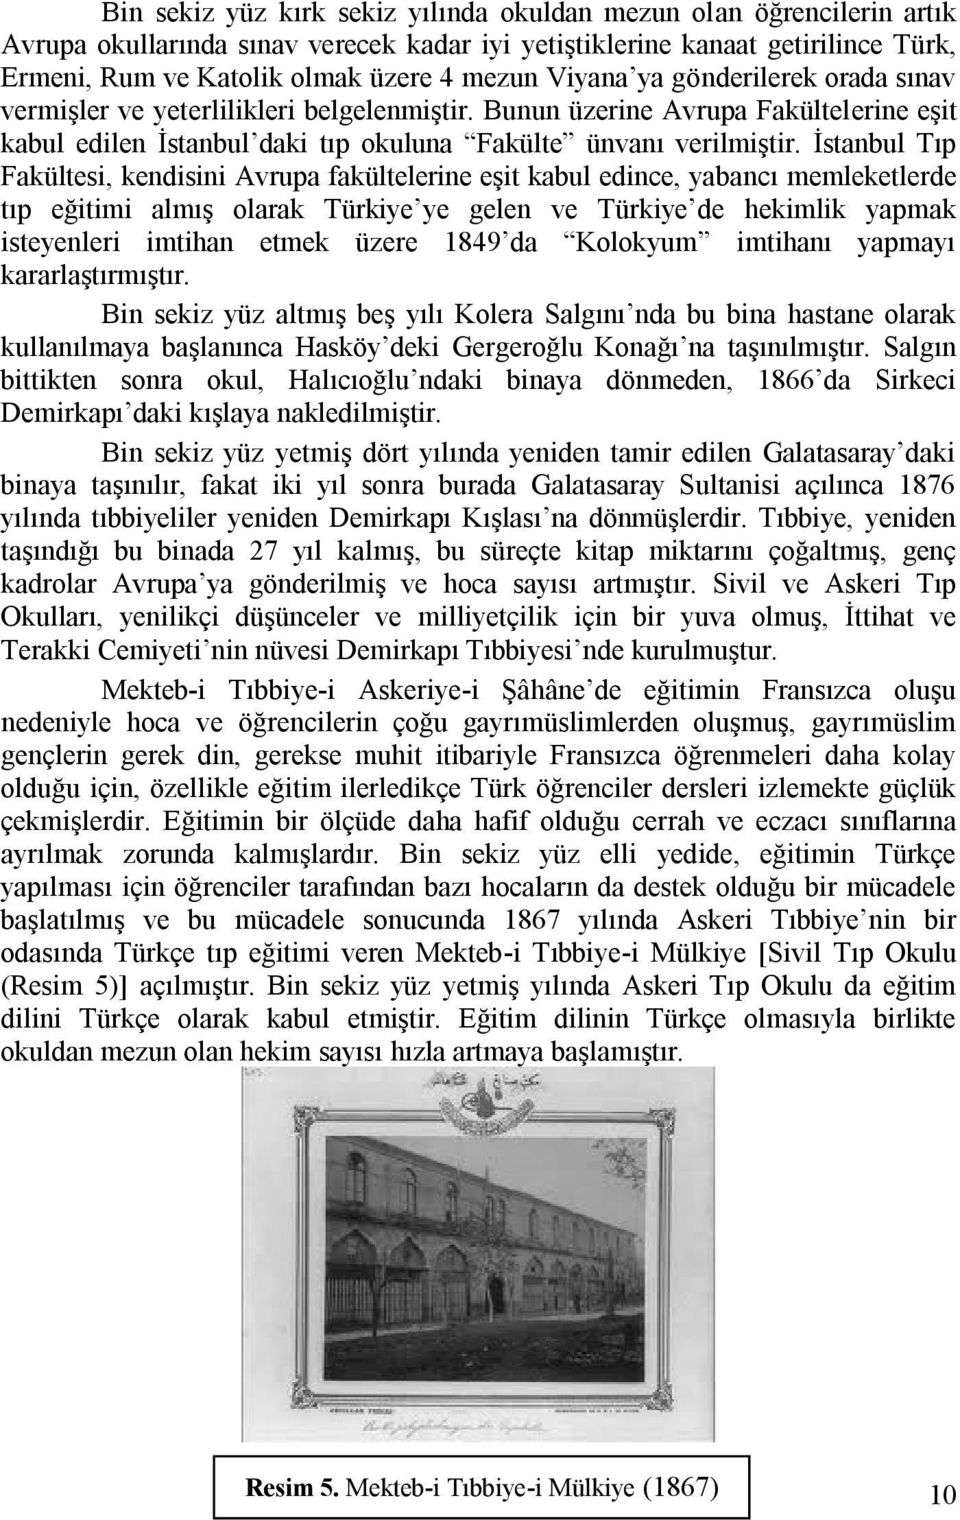 İstanbul Tıp Fakültesi, kendisini Avrupa fakültelerine eşit kabul edince, yabancı memleketlerde tıp eğitimi almış olarak Türkiye ye gelen ve Türkiye de hekimlik yapmak isteyenleri imtihan etmek üzere